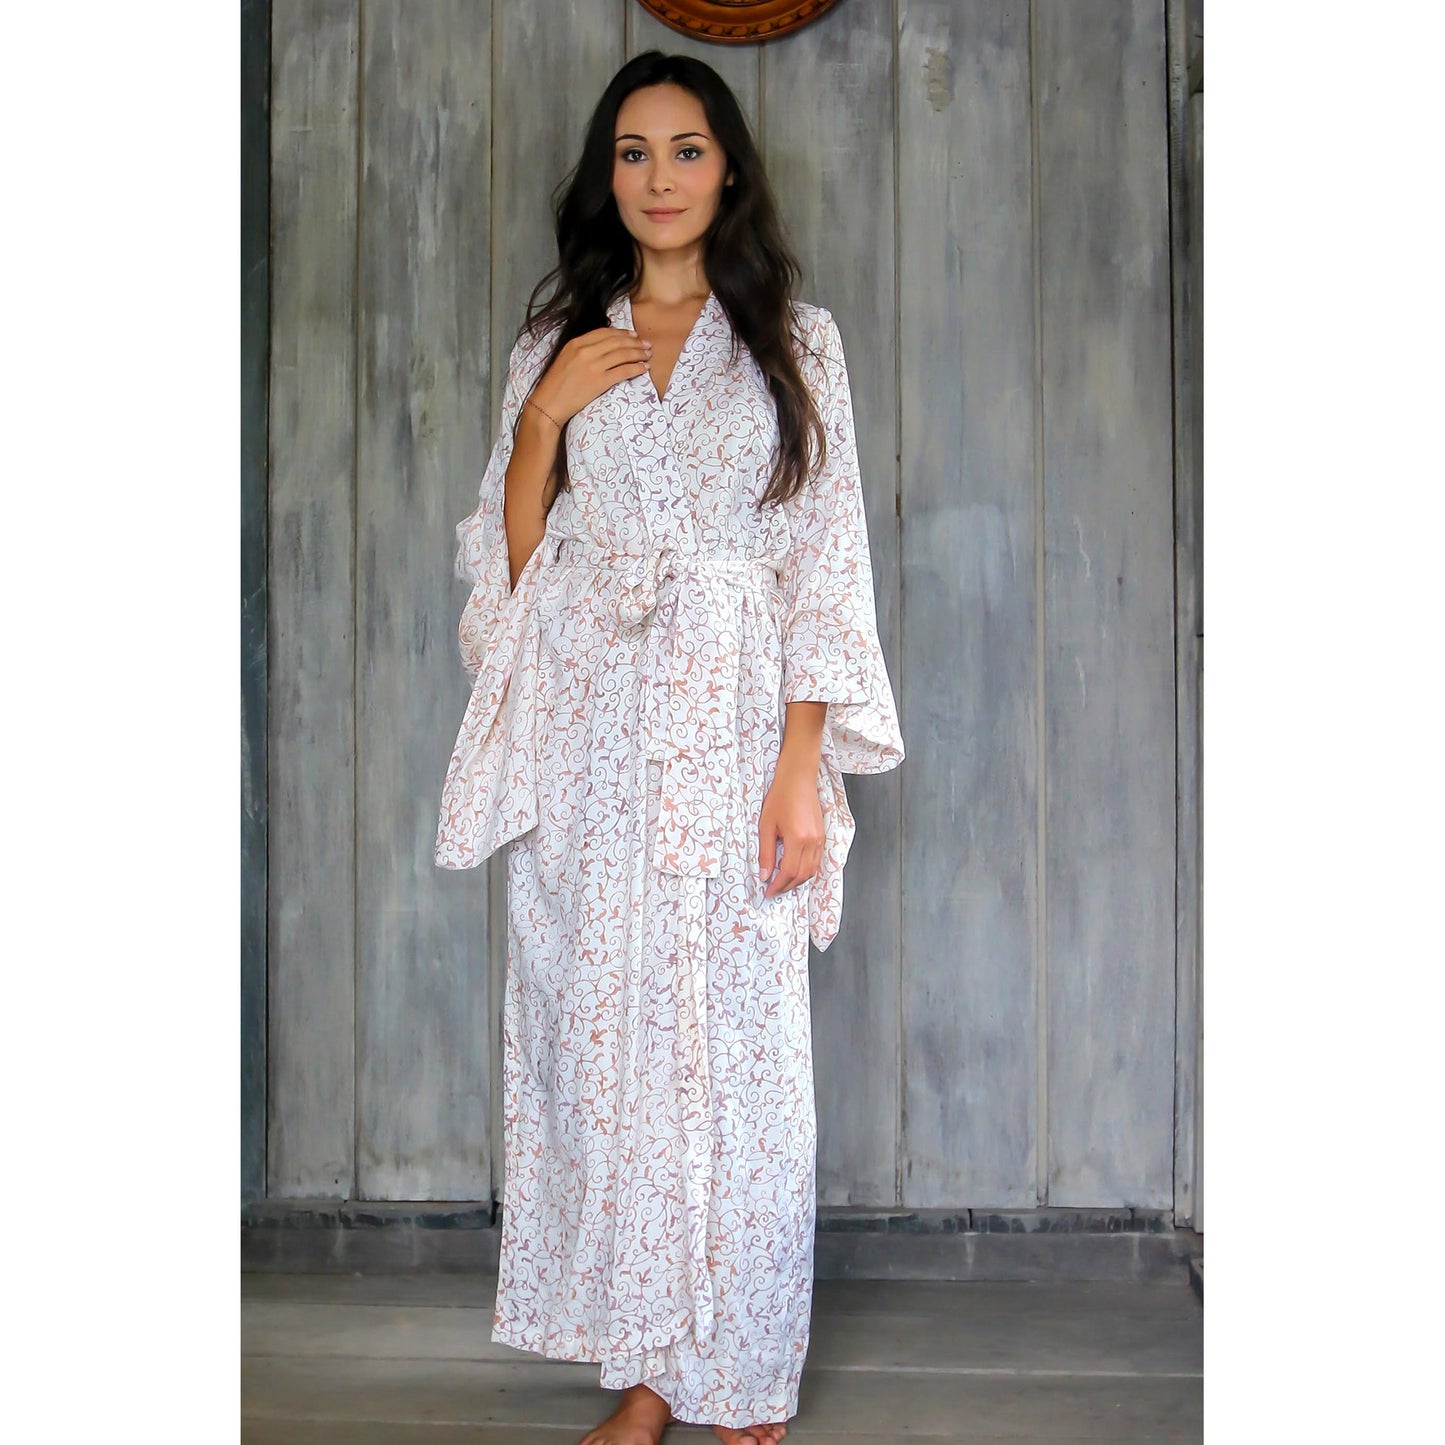 Bali Arabesques White Floral Batik Robe